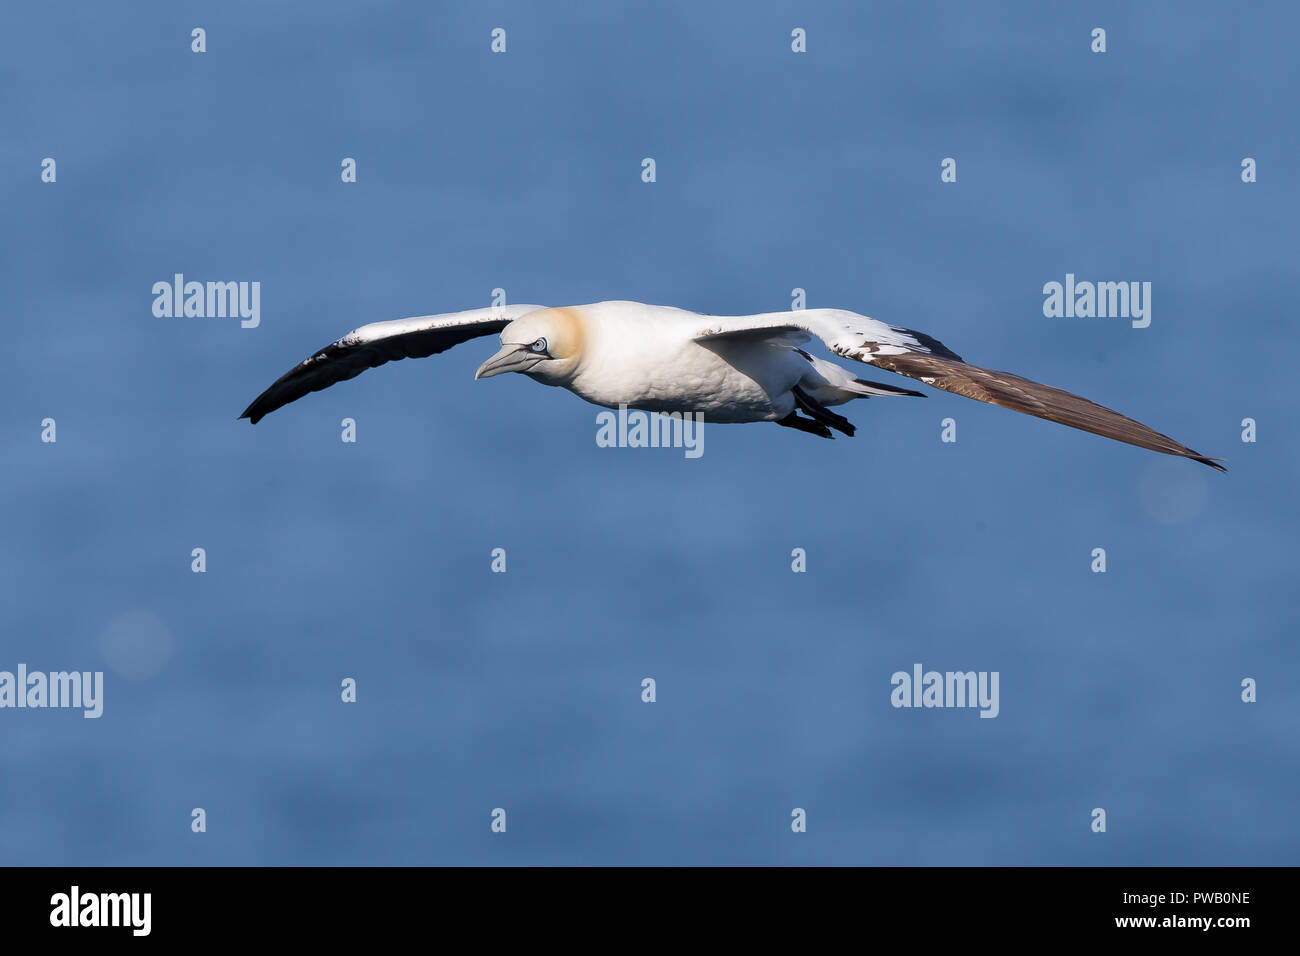 Regno Unito gannet seabird (Morus bassanus) isolato in volo midair, in alto sull'acqua, Bempton Cliffs. Flying Northern gannet; ali sparse. Foto Stock